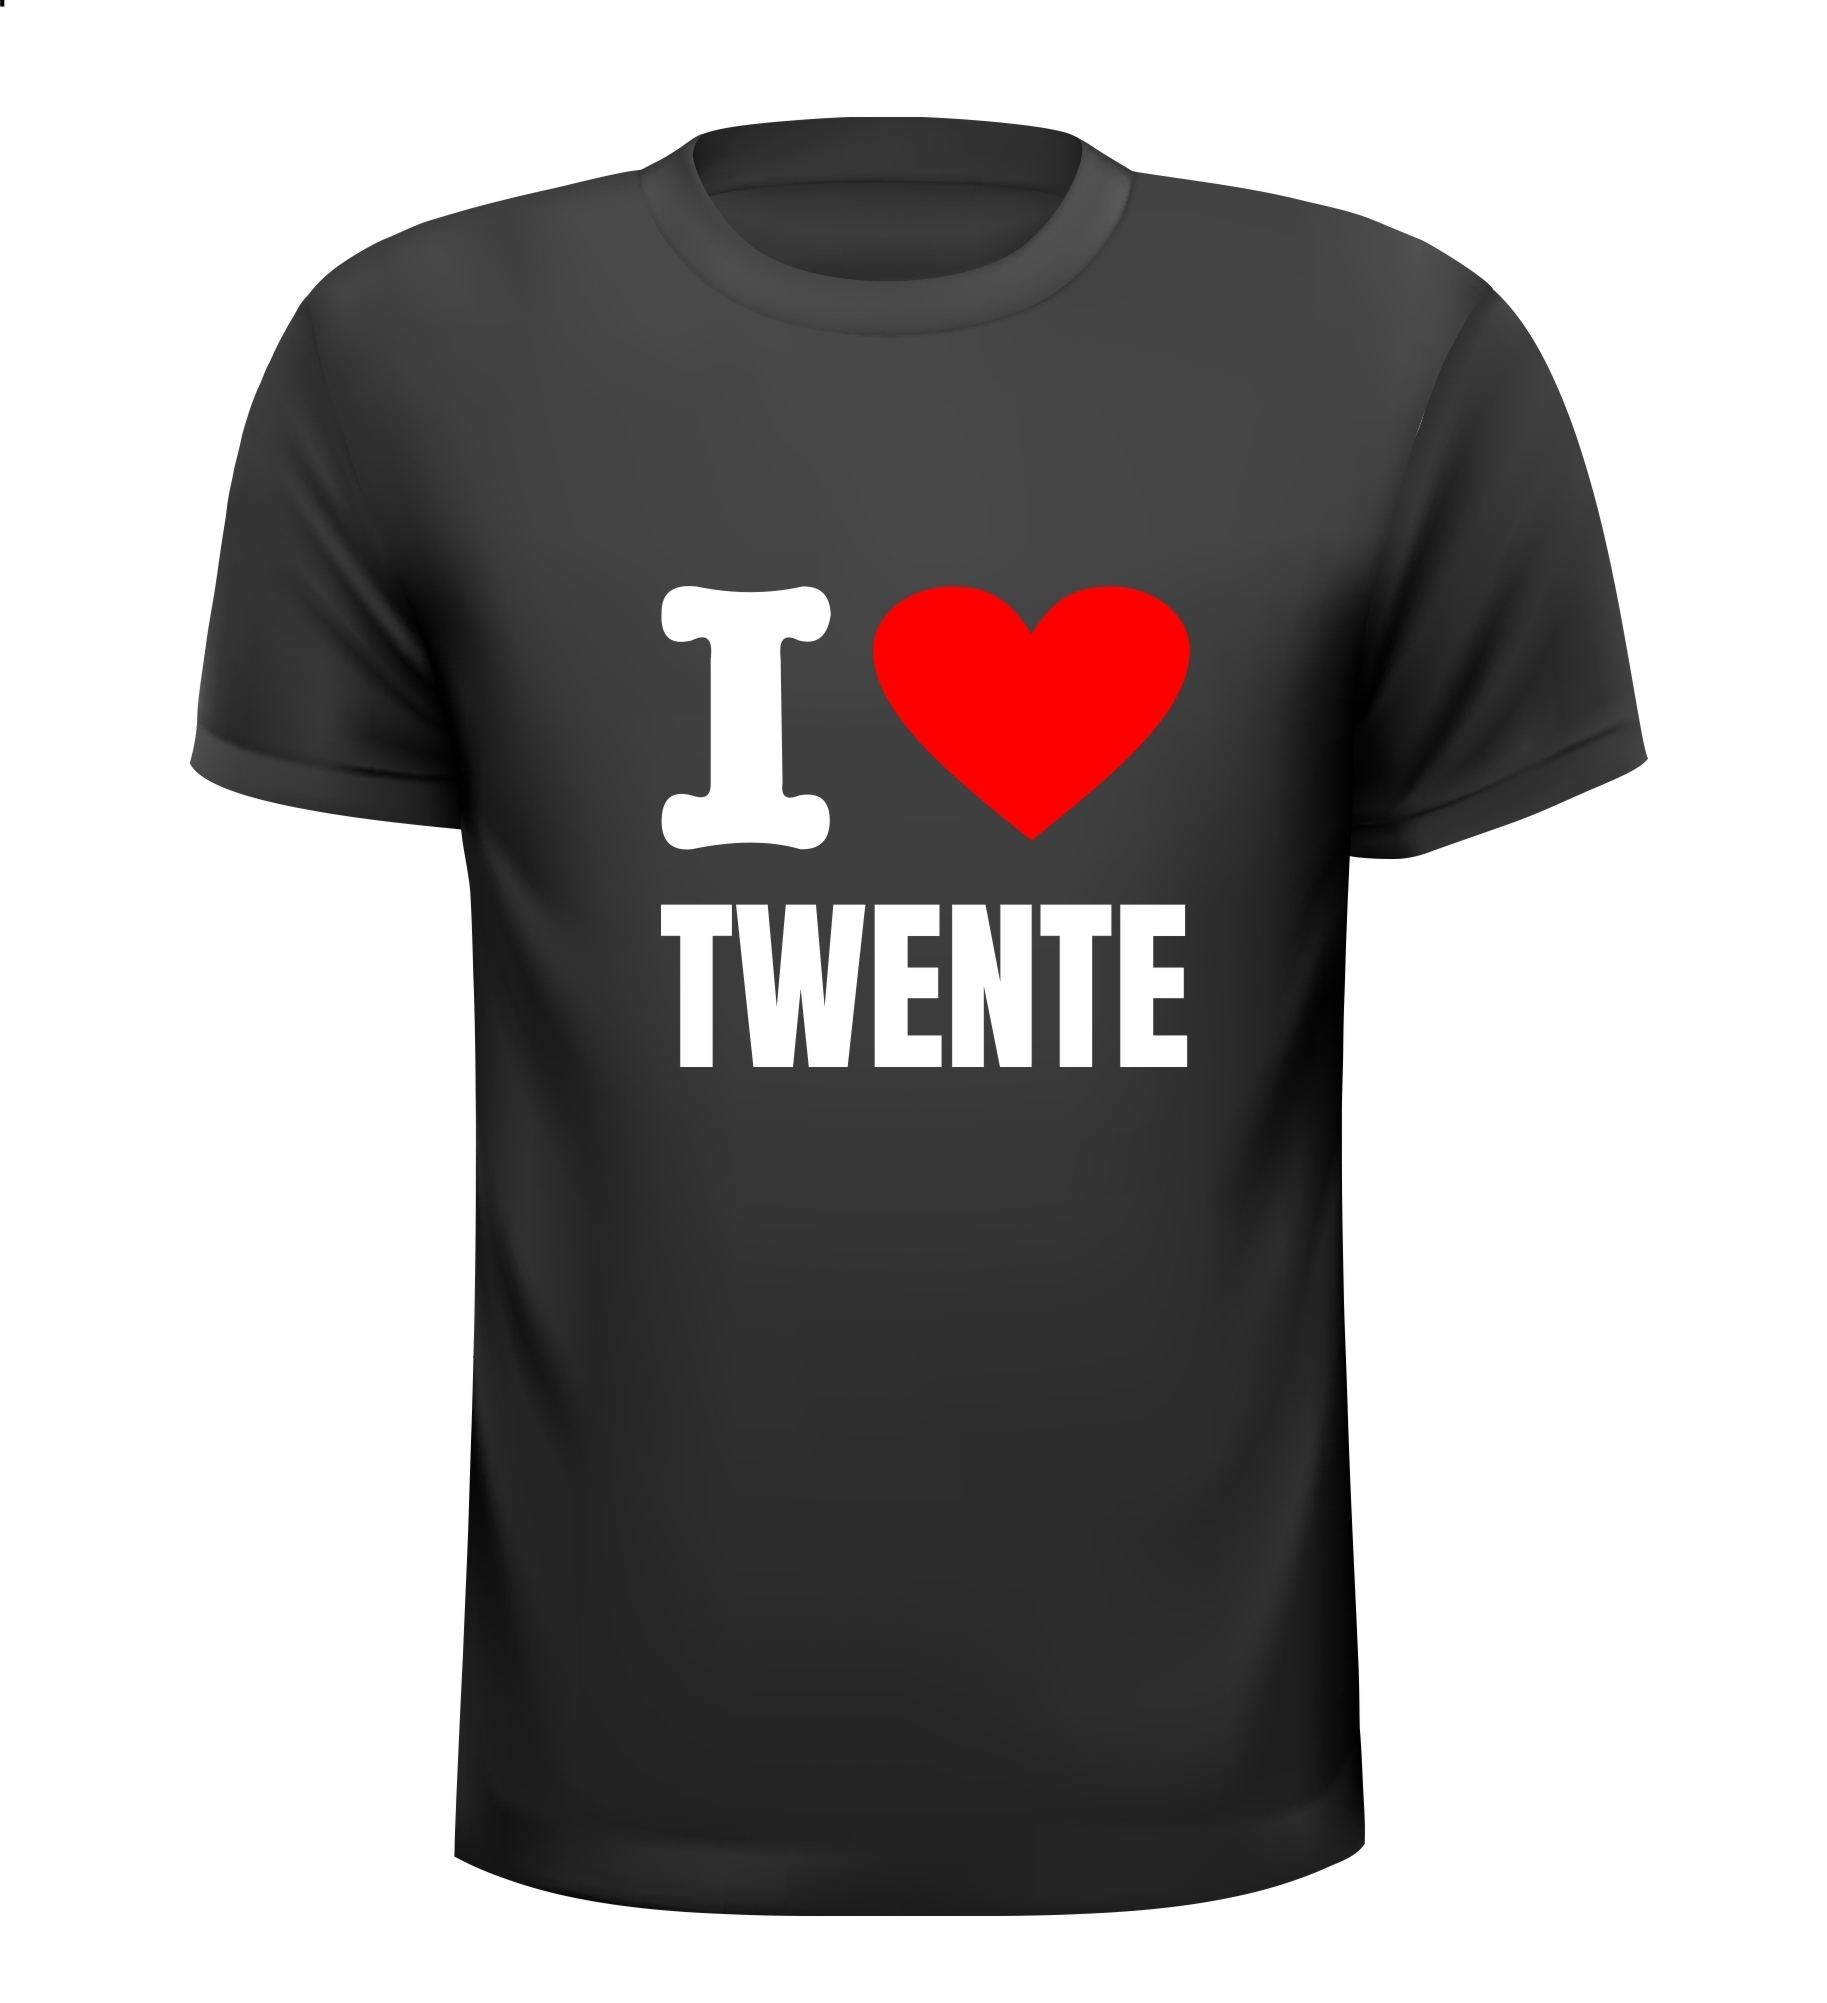 T-shirt i love Twente Tukker Trots op houden van